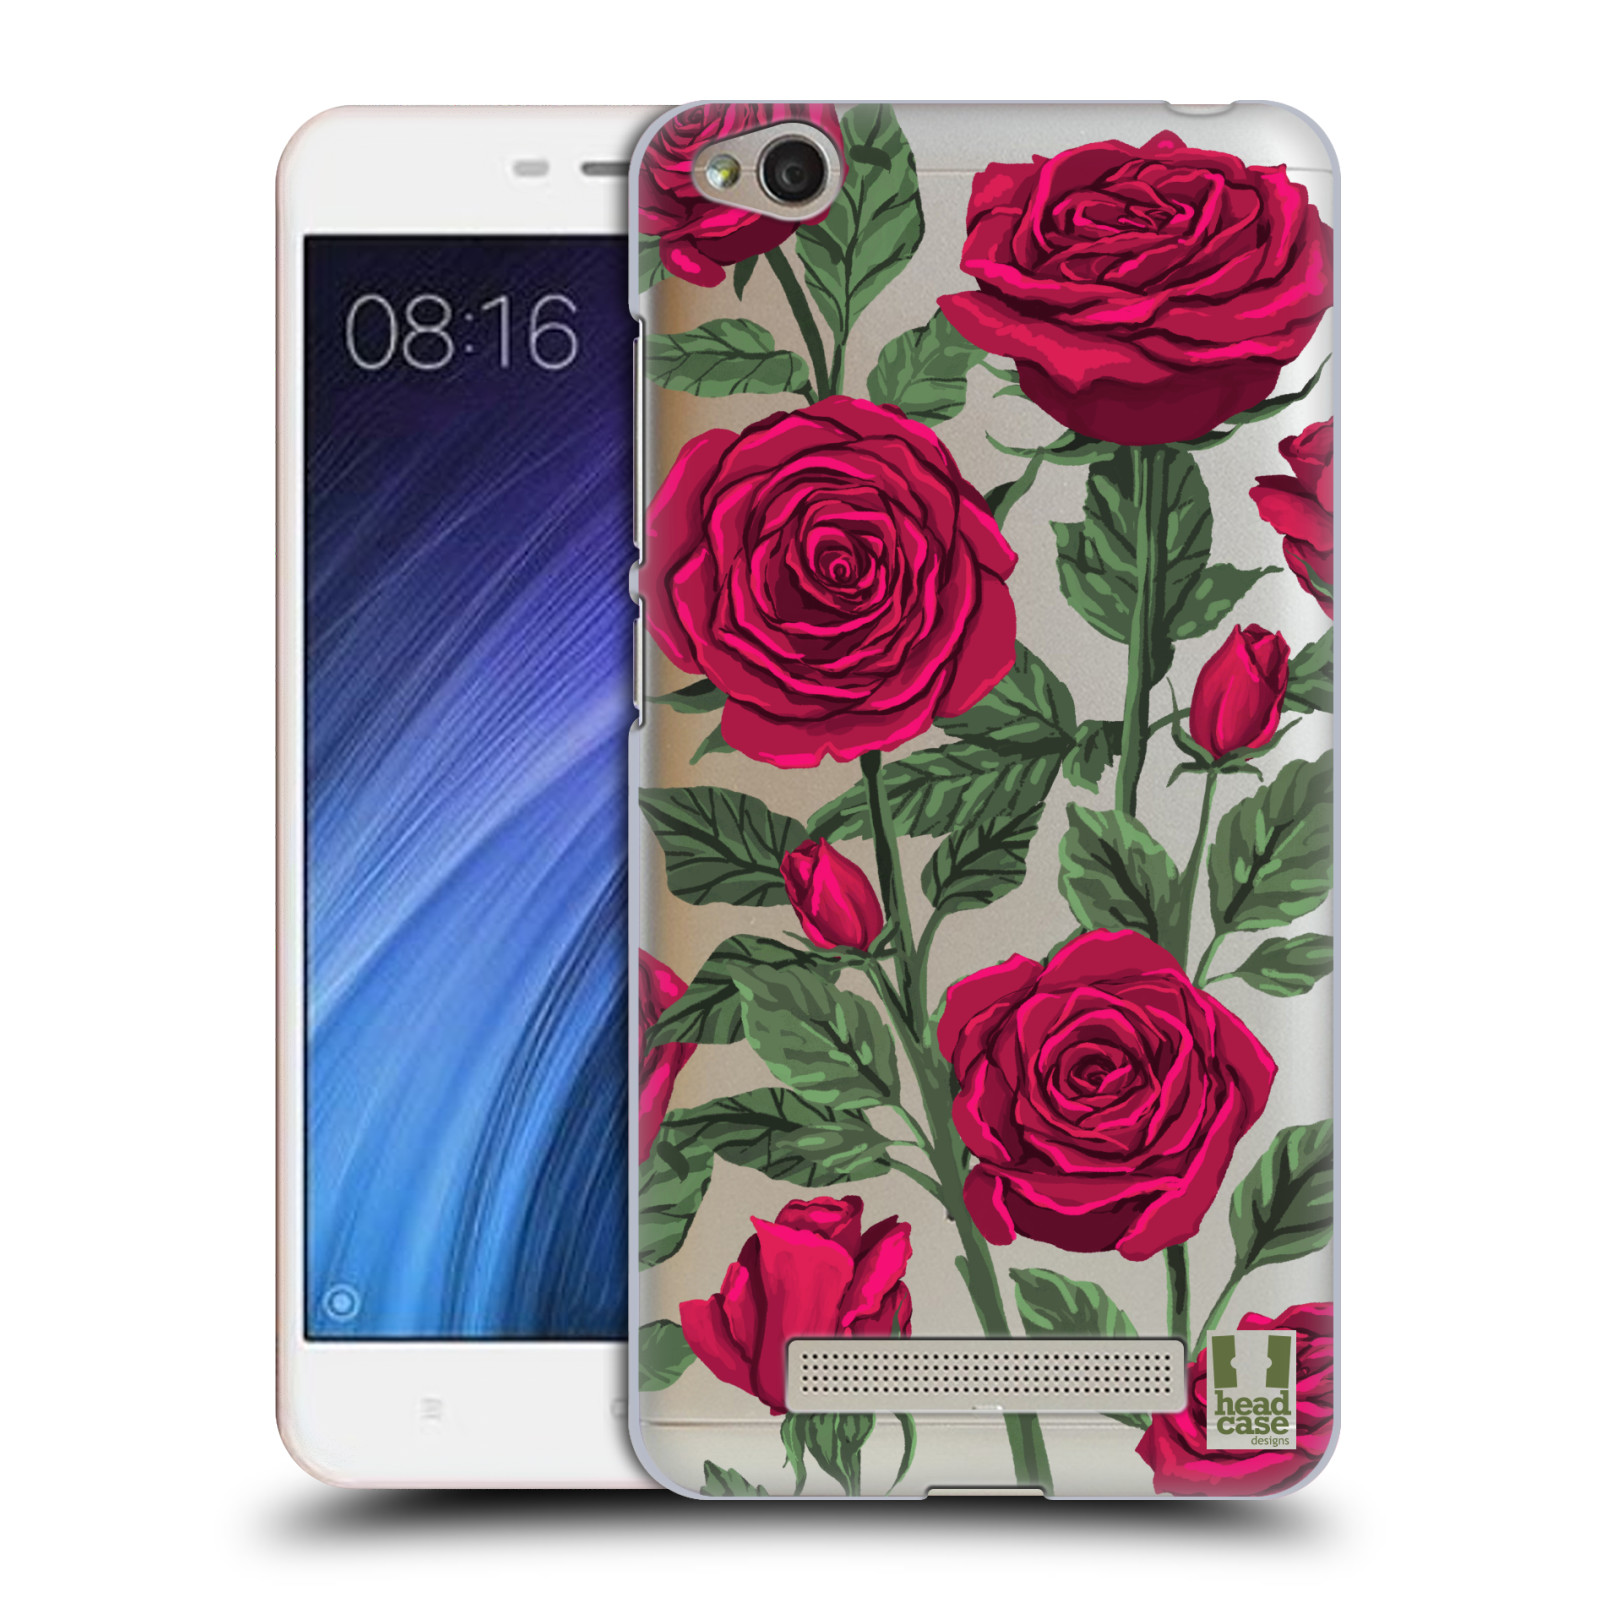 Pouzdro na mobil Xiaomi Redmi 4a - HEAD CASE - květina růže